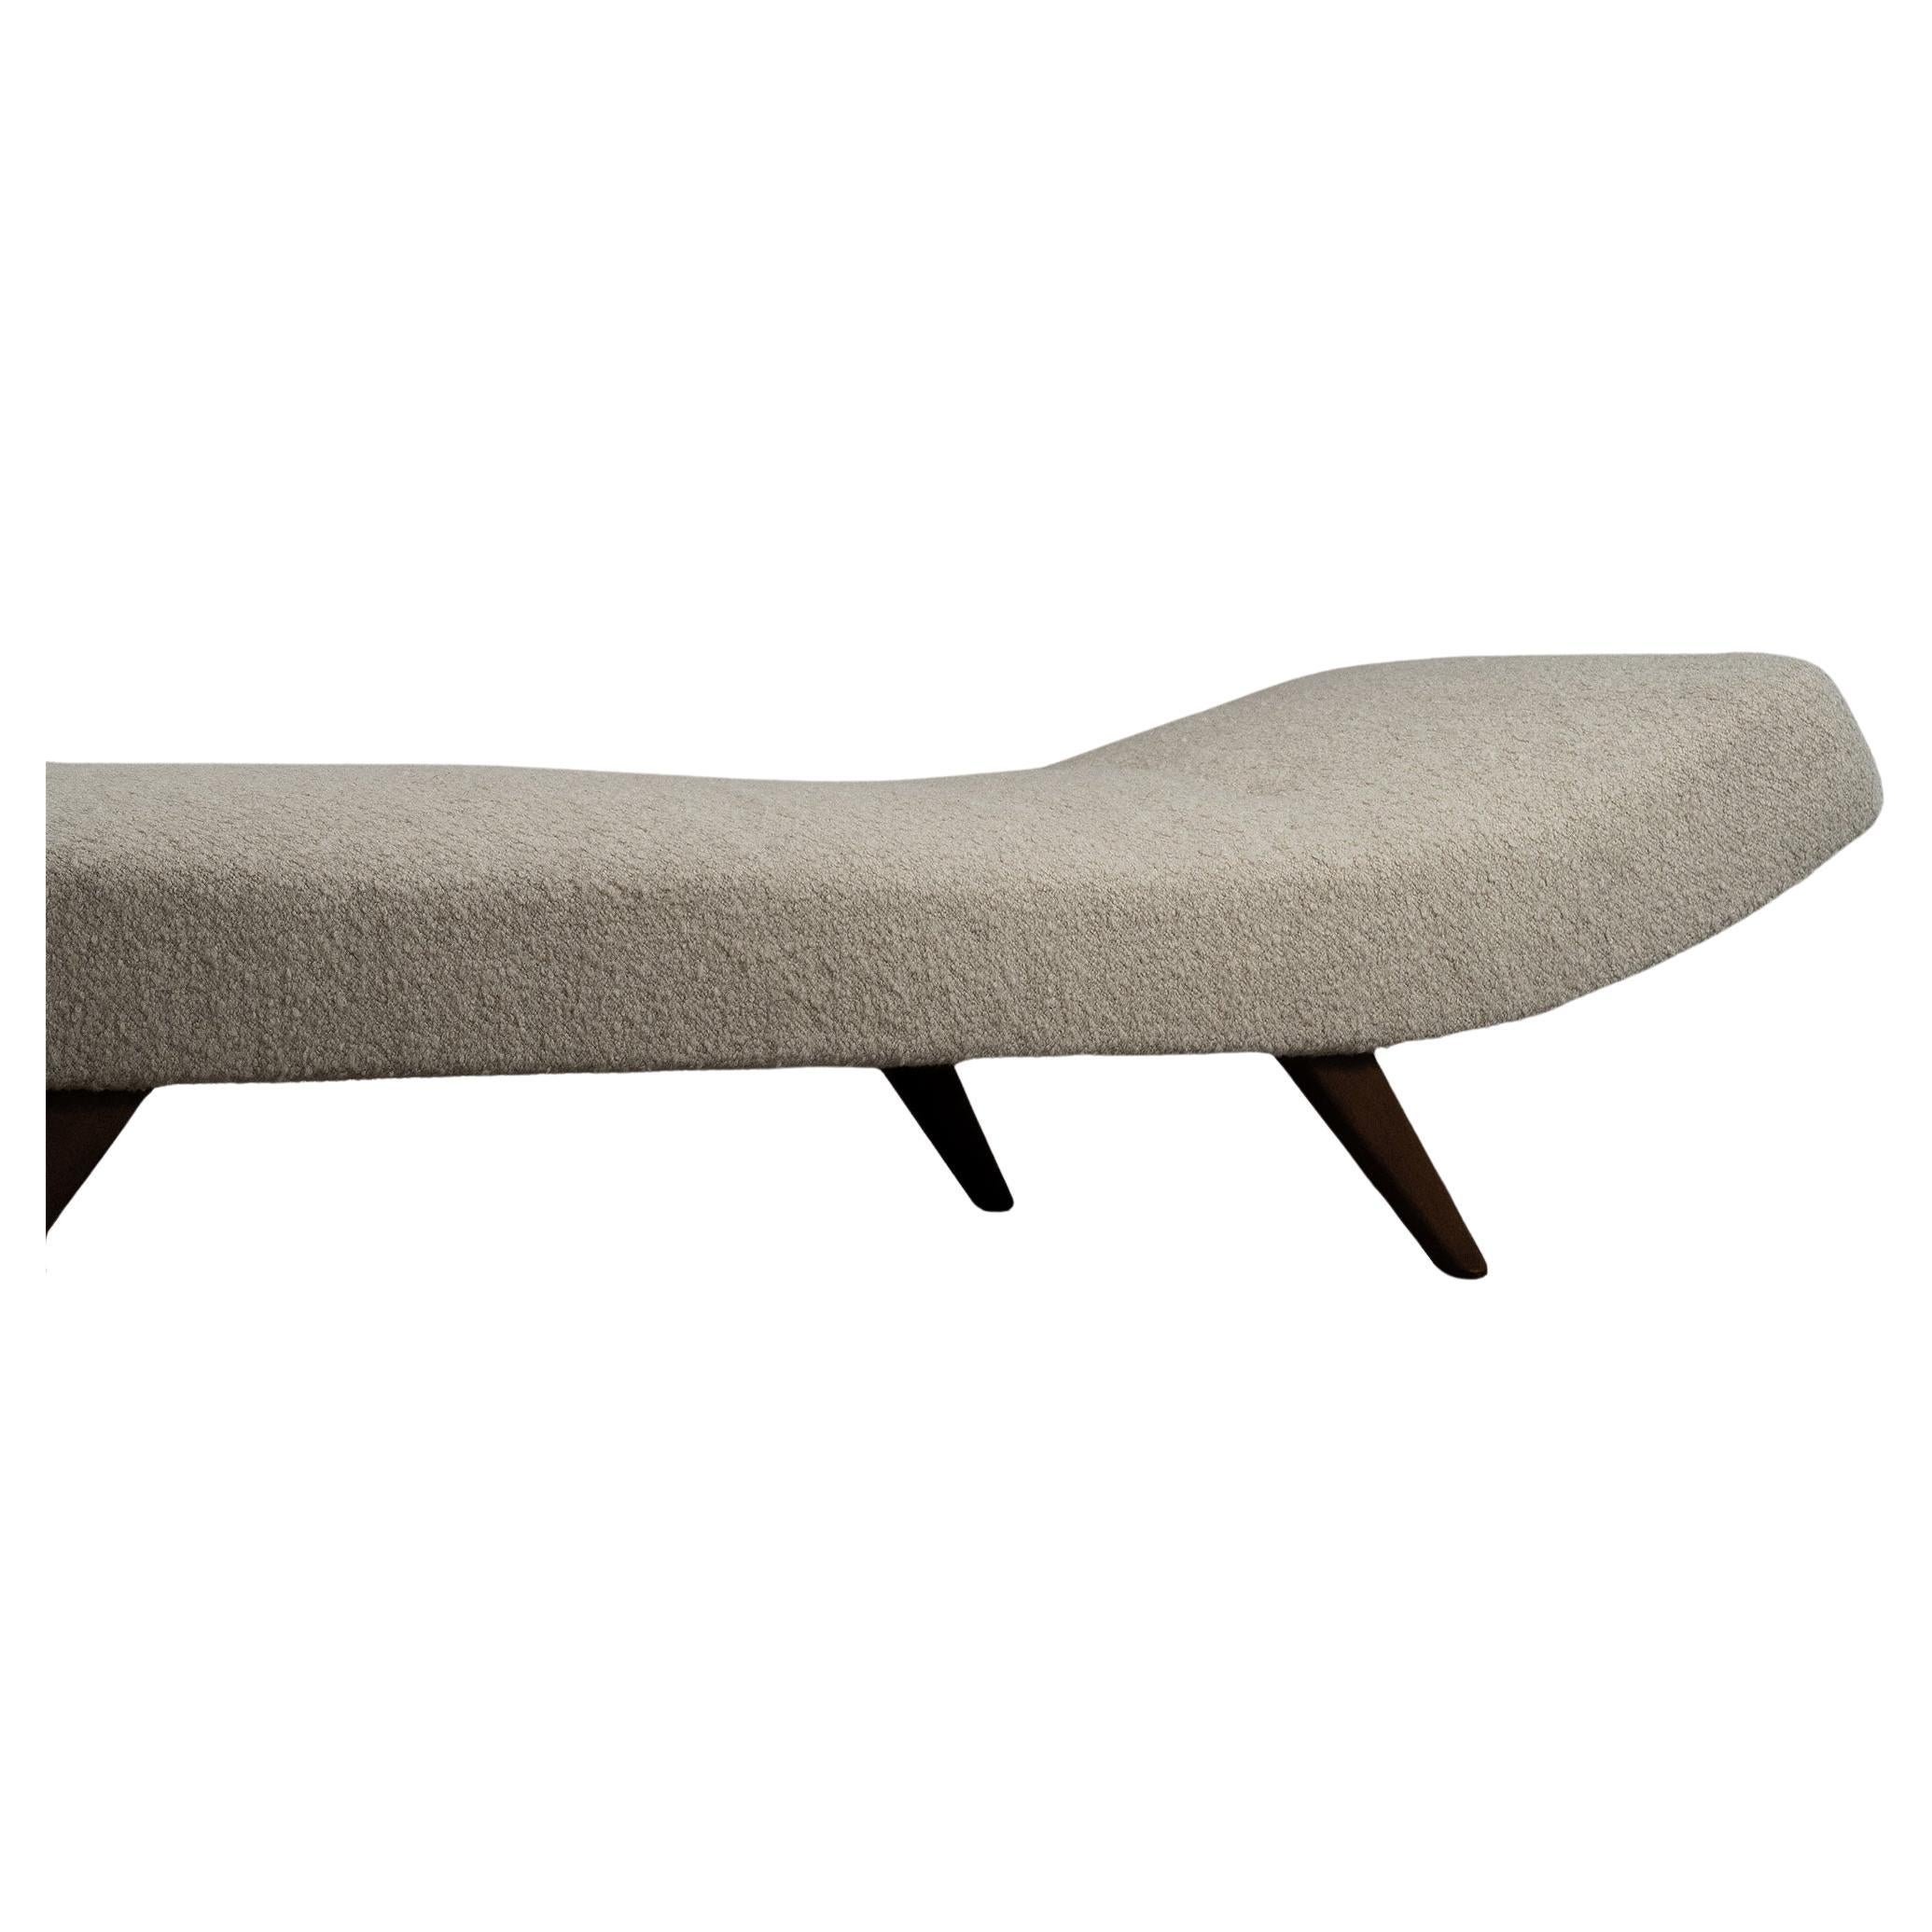 Lit de jour moderne, minimaliste et épuré, inspiré par le design classique du mobilier danois. Le lit de jour est doté d'un matelas long et d'un bouton pour donner plus de profondeur à l'ensemble. Les pieds en bois foncé ont été huilés et le matelas